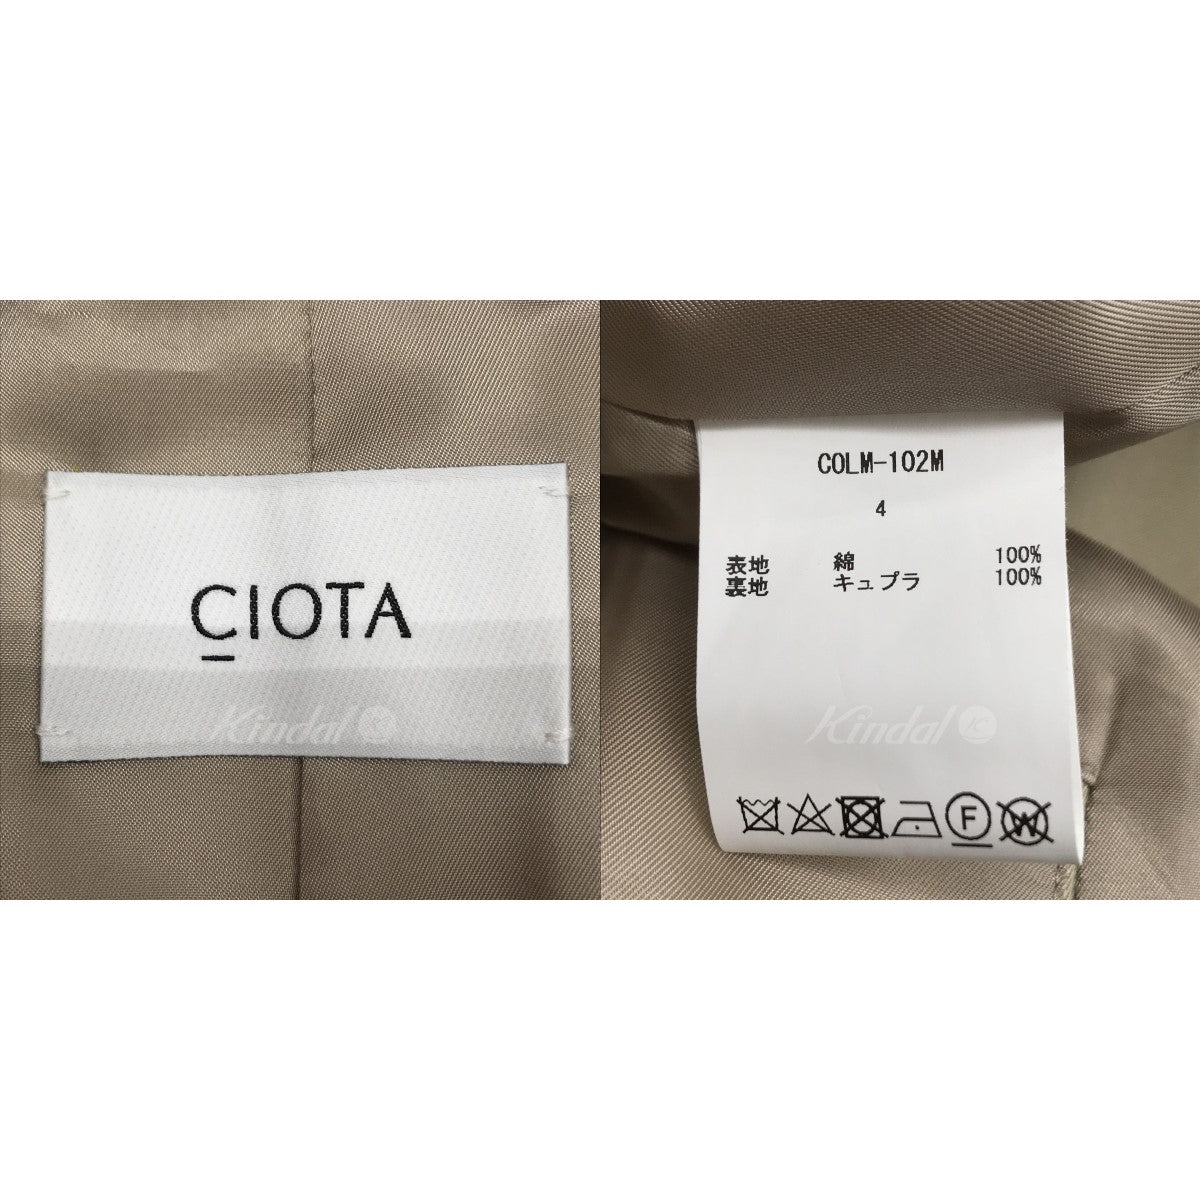 CIOTA(シオタ) スビンコットン ギャバジン バルマカンコート COLM-102M ...